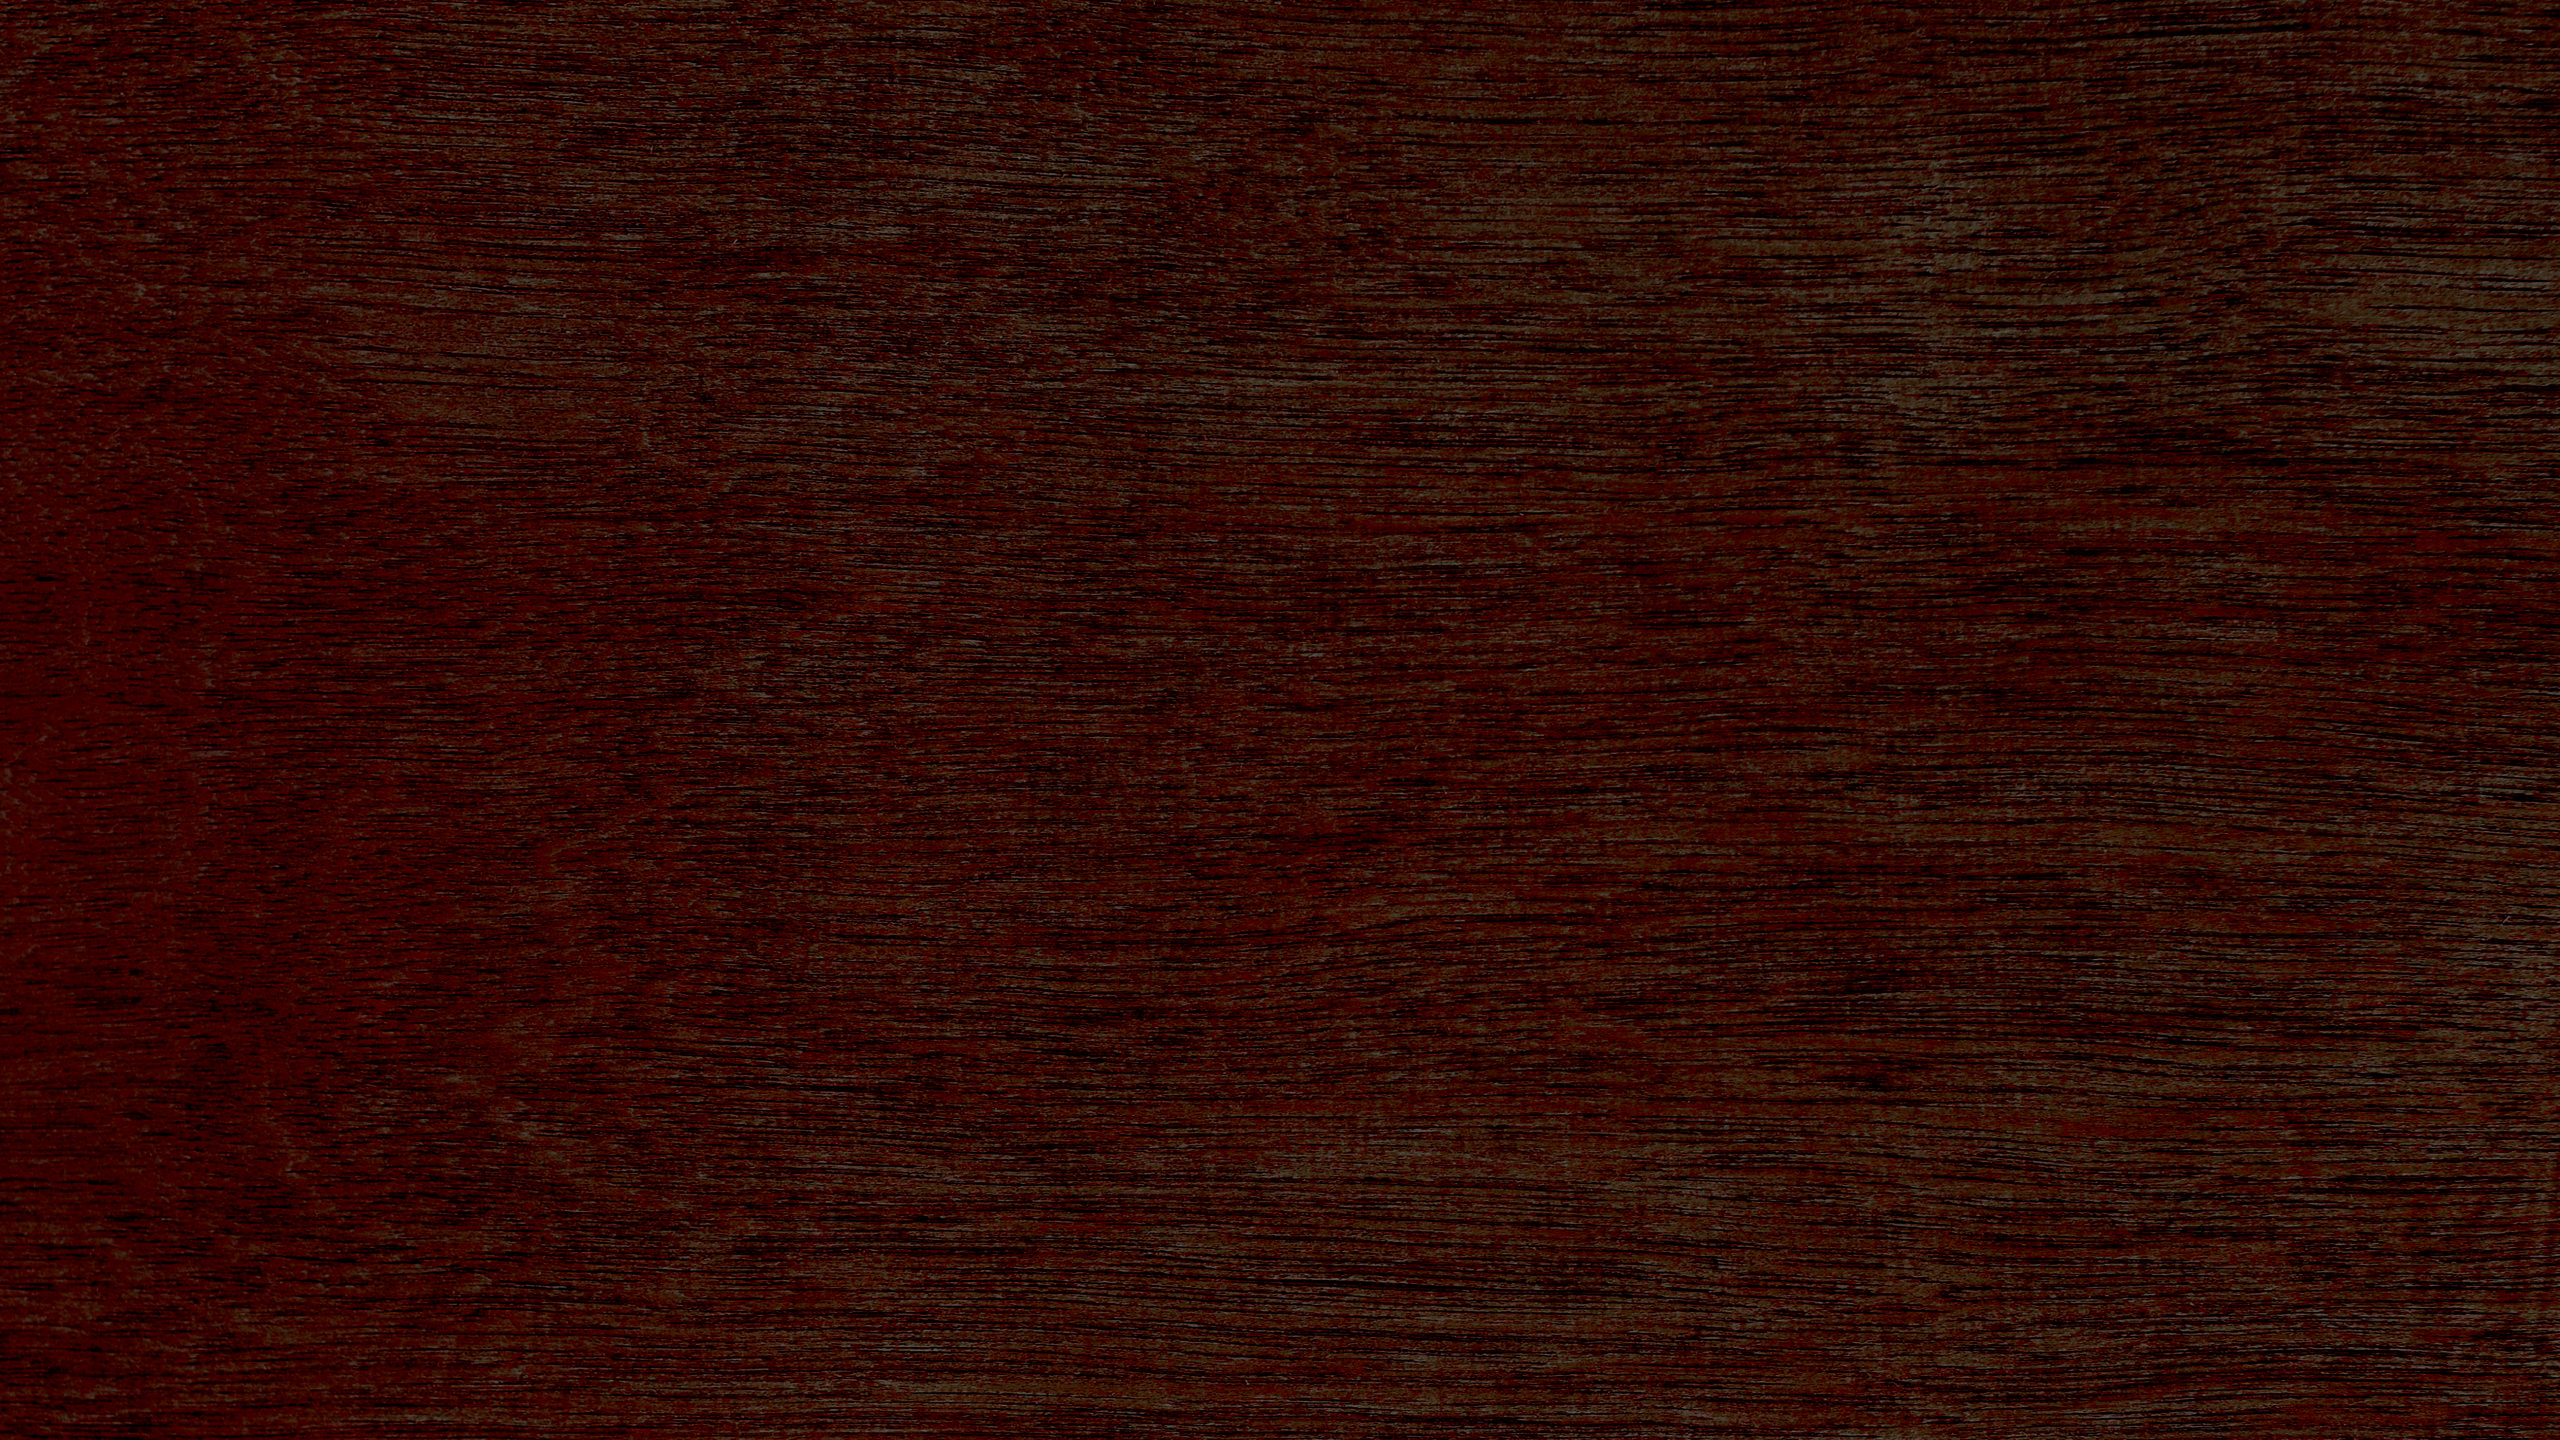 硬木, 木染色, 棕色, 木, 焦糖色素 壁纸 2560x1440 允许